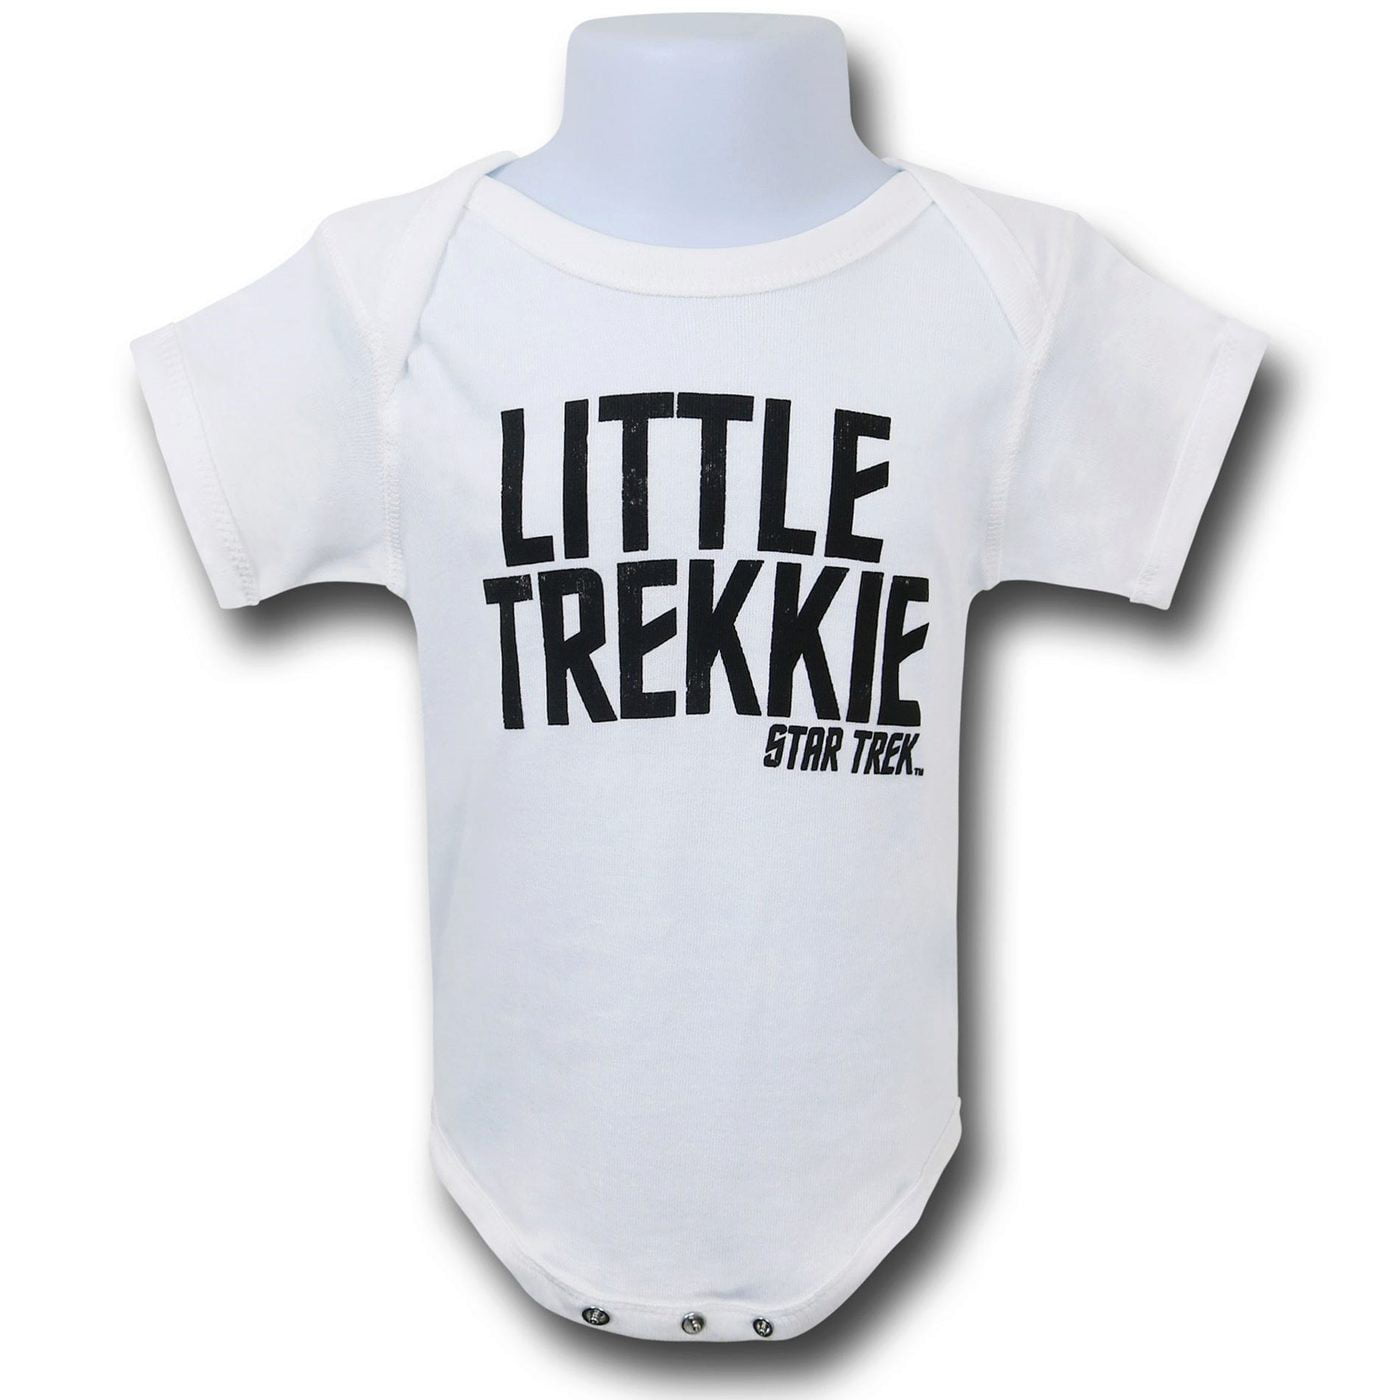 Star Trek T-Shirt "Little Trekkie" Fan Baby Boy Girl Toddler Tee Funny Gift 